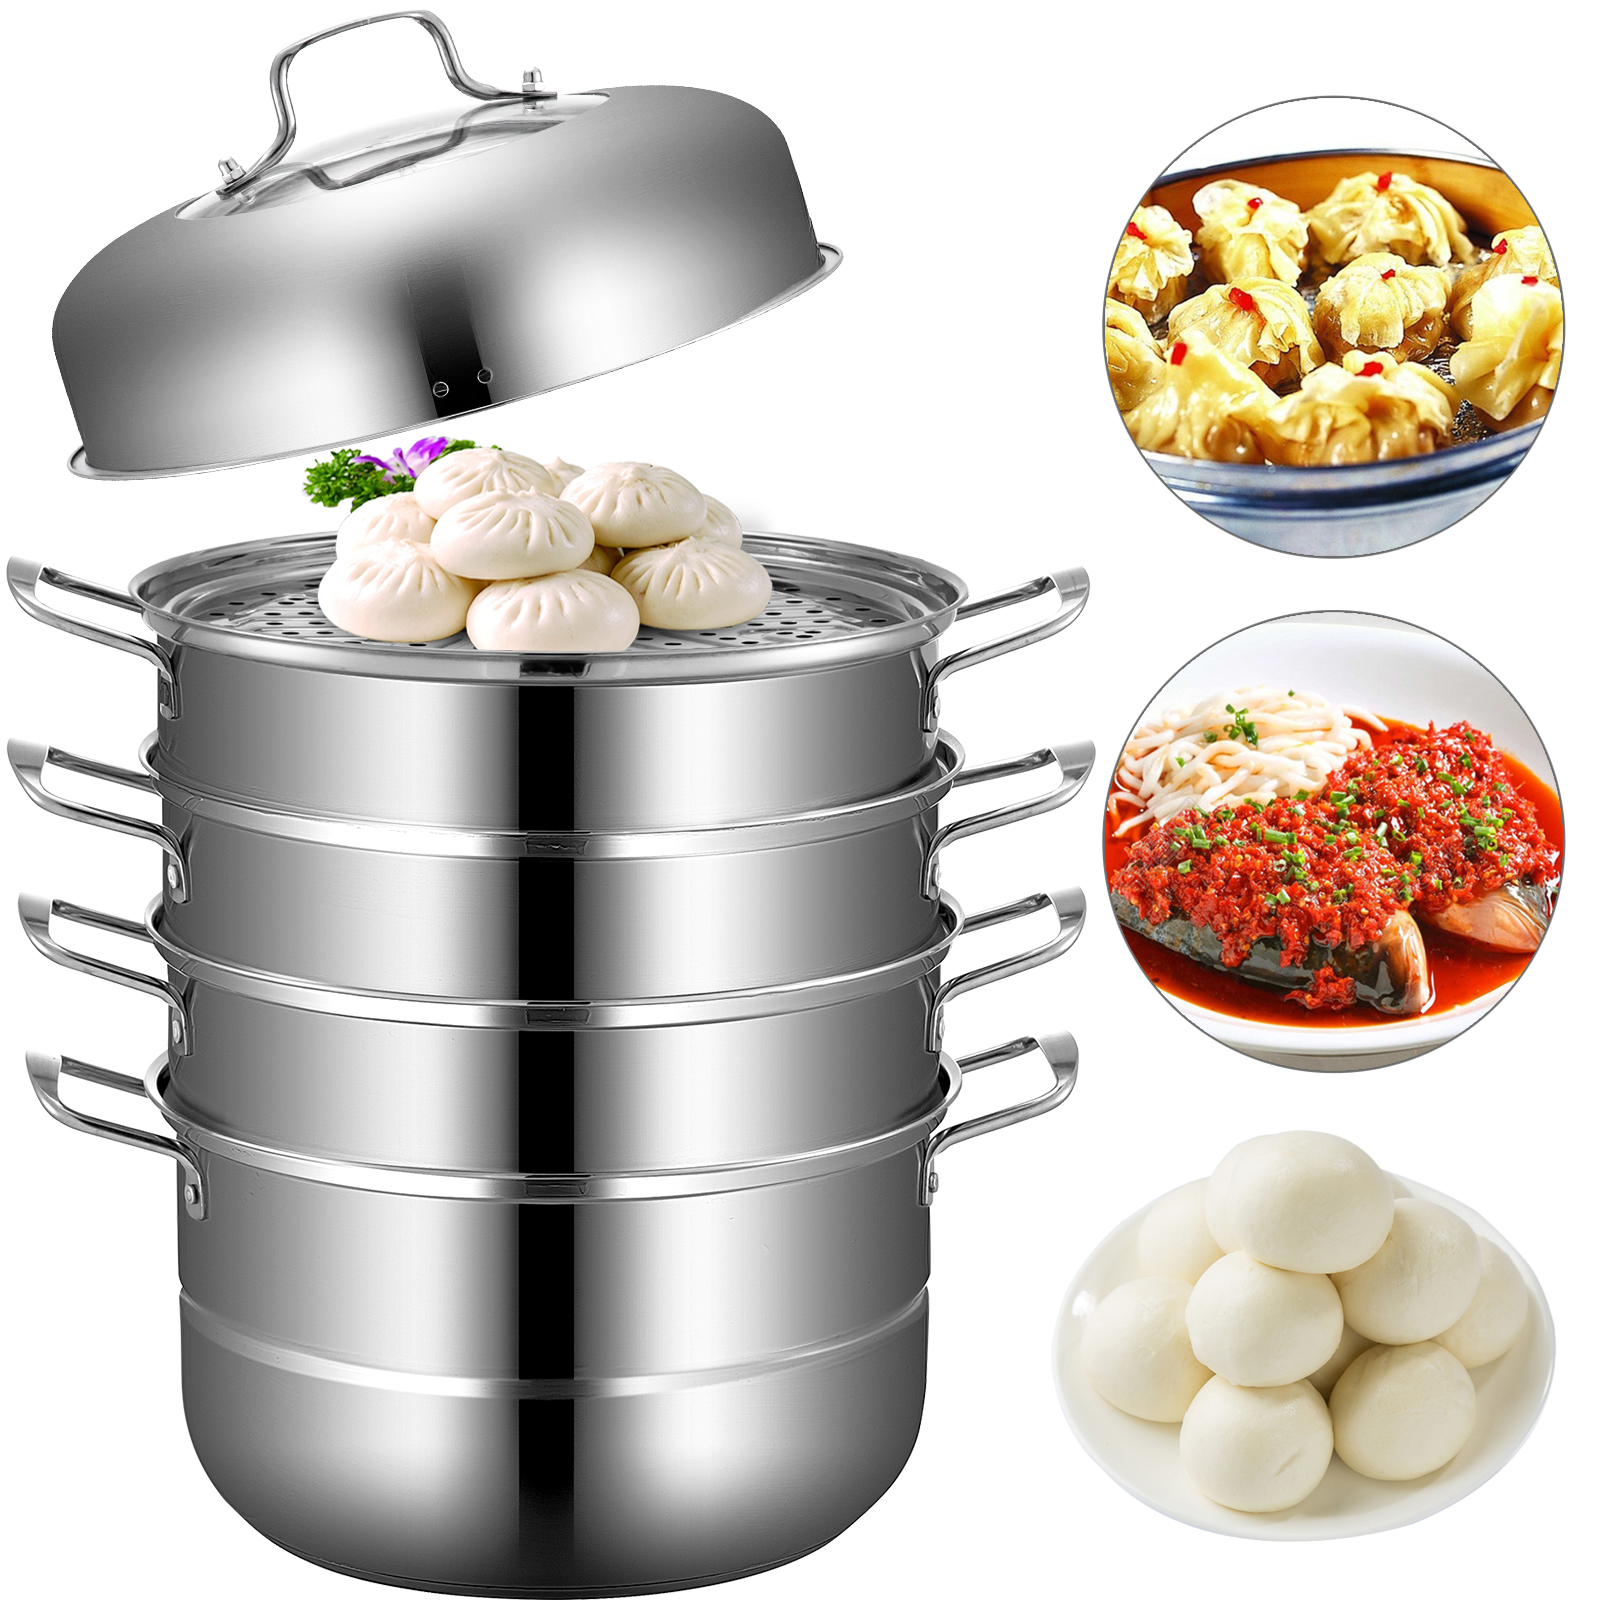 VEVOR 5 Decks Electric Food Steamer Traditional Vegetable Pot Cooker Stackable Baskets